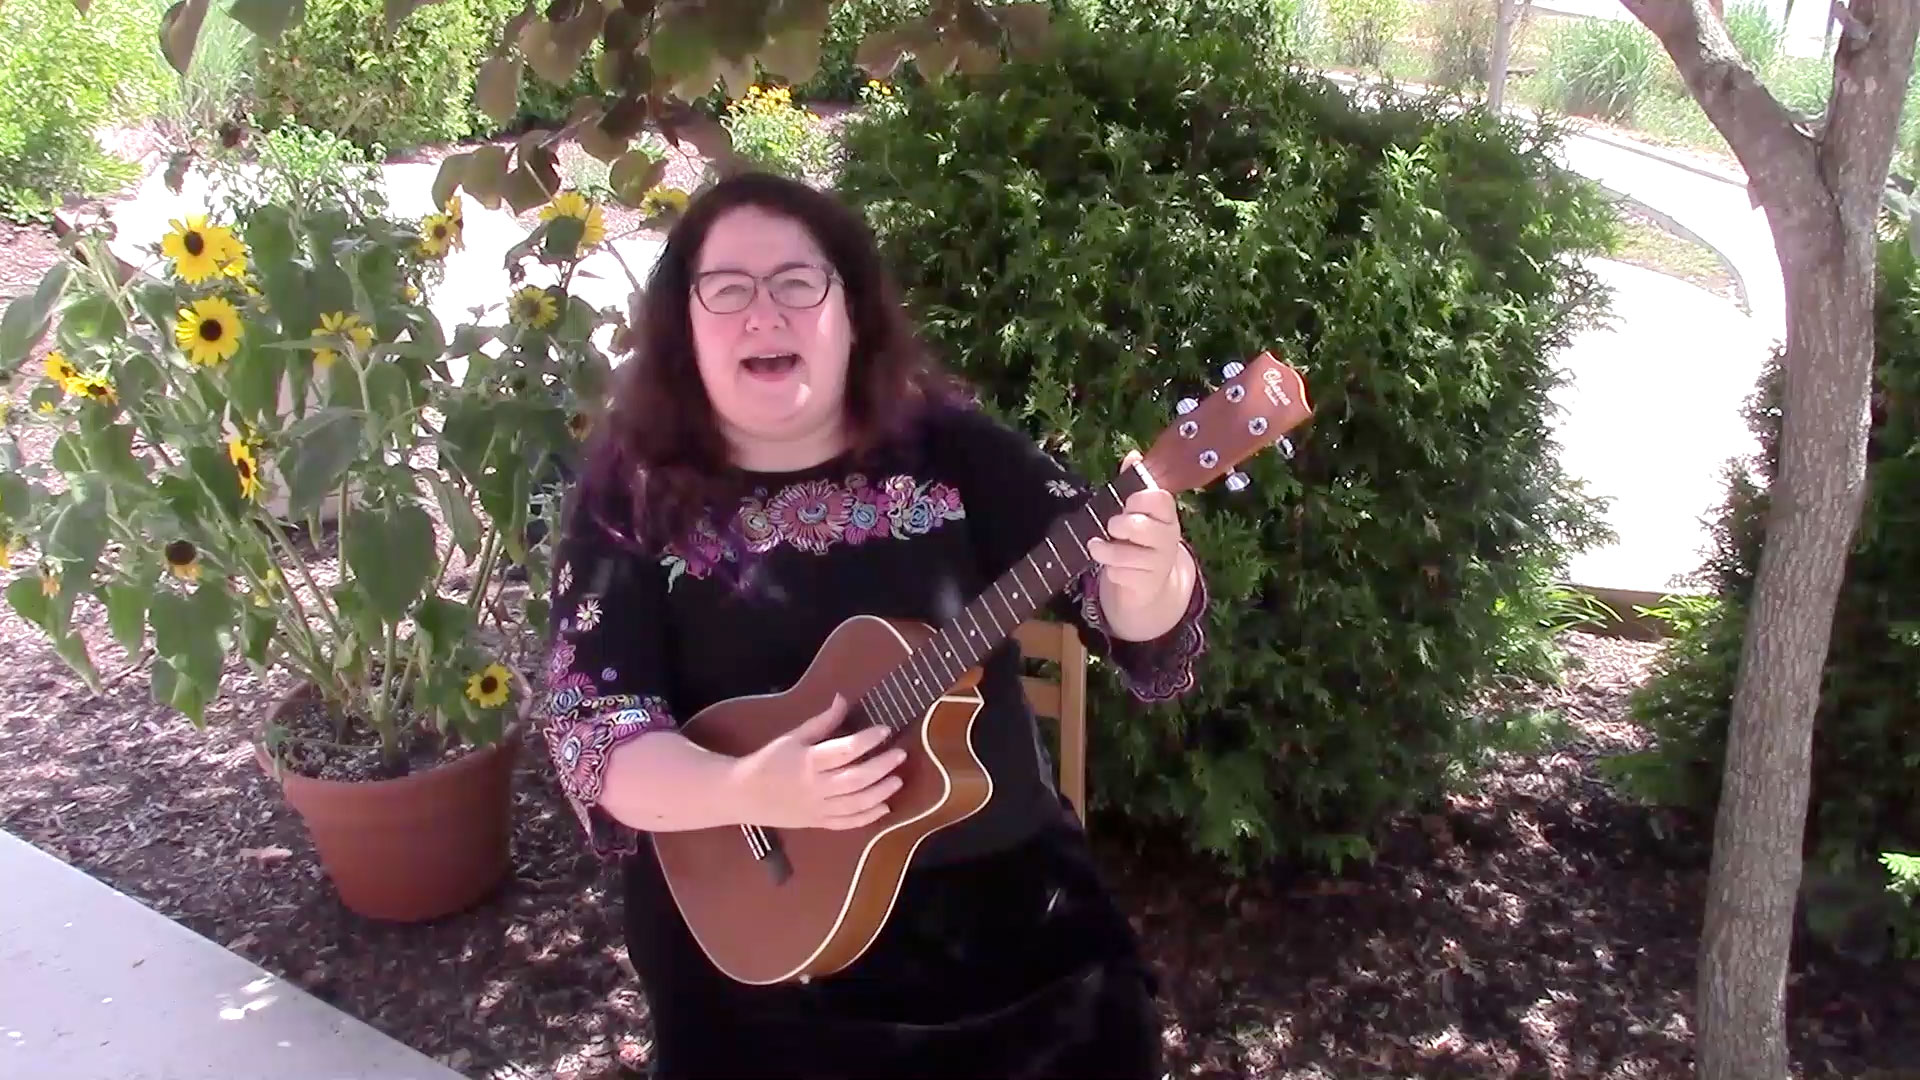 Melanie plays her ukulele